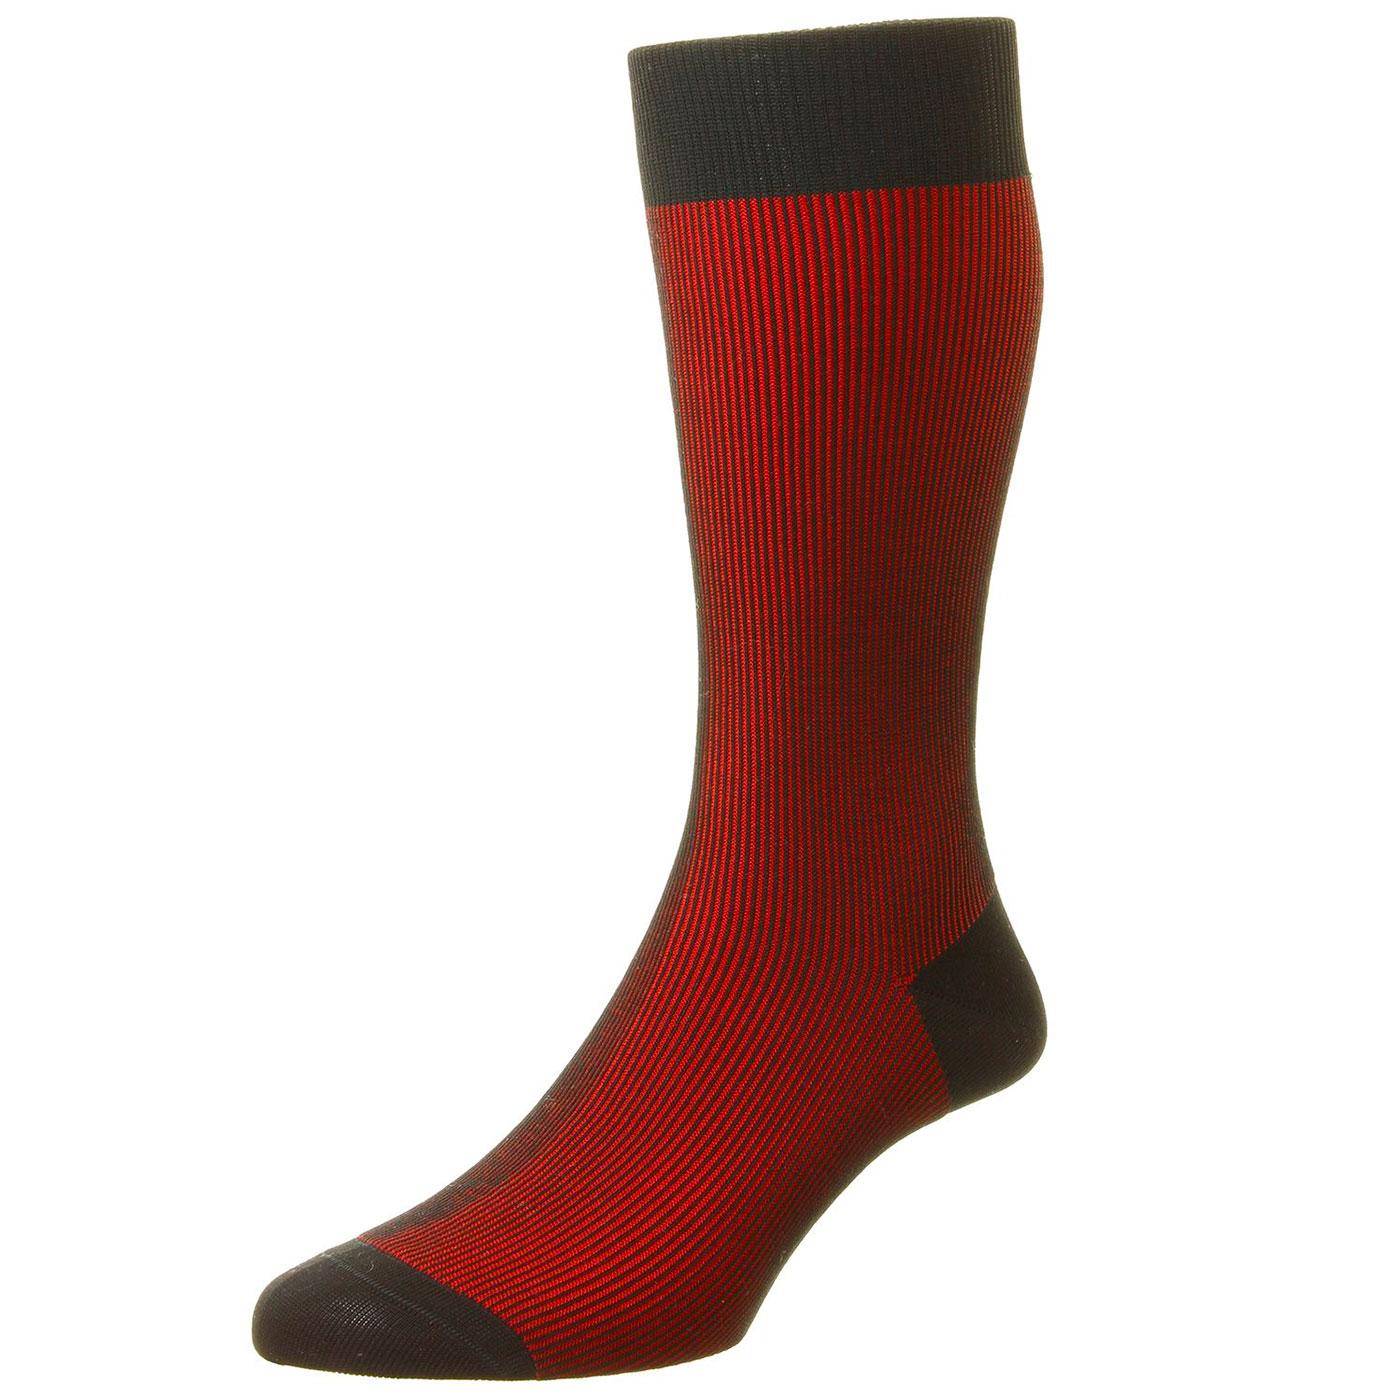 PANTHERELLA Santos Men's Tonic Effect Socks in Black/Red